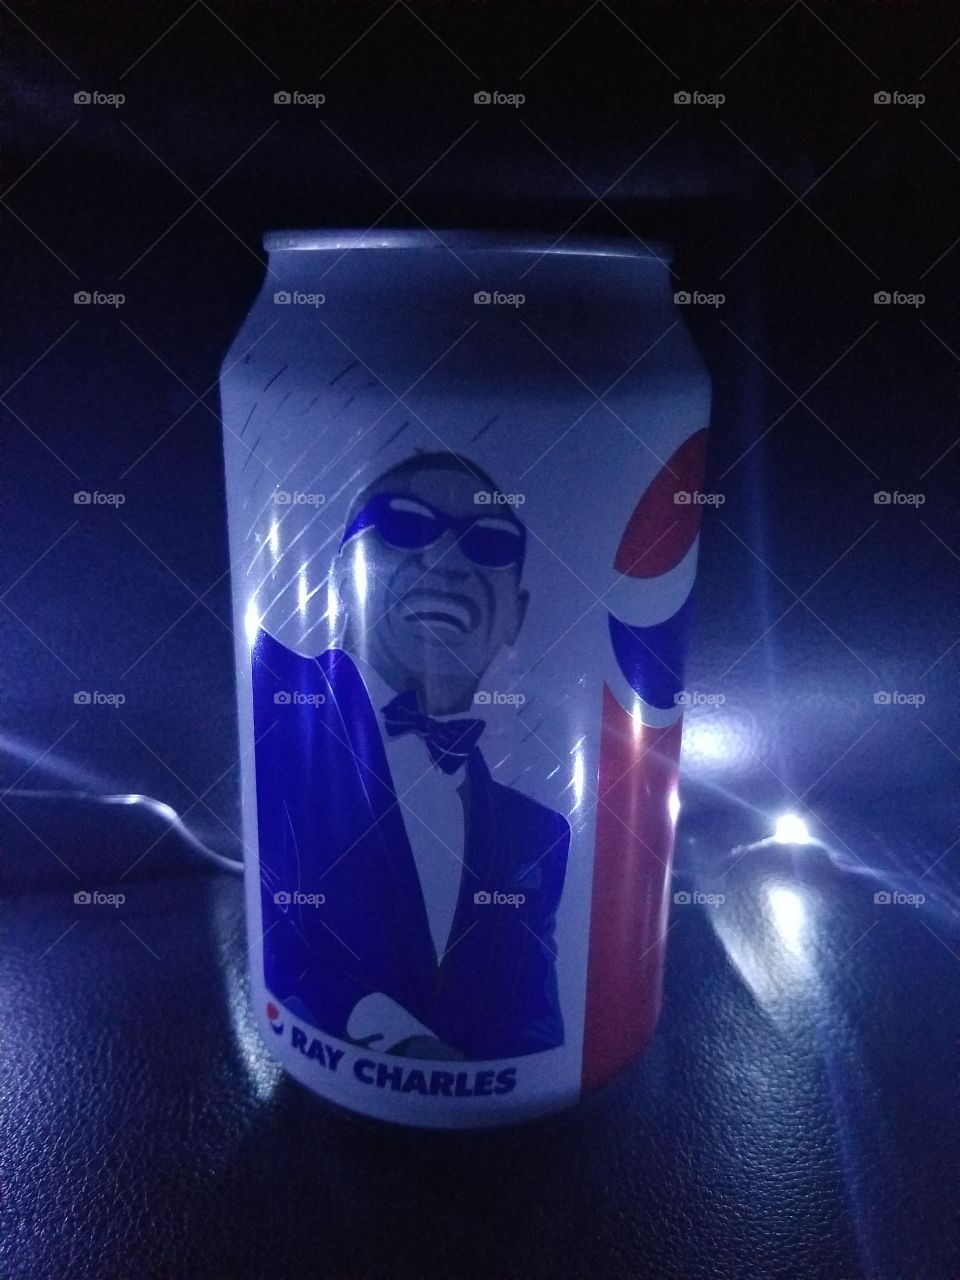 That's pretty cool Pepsi